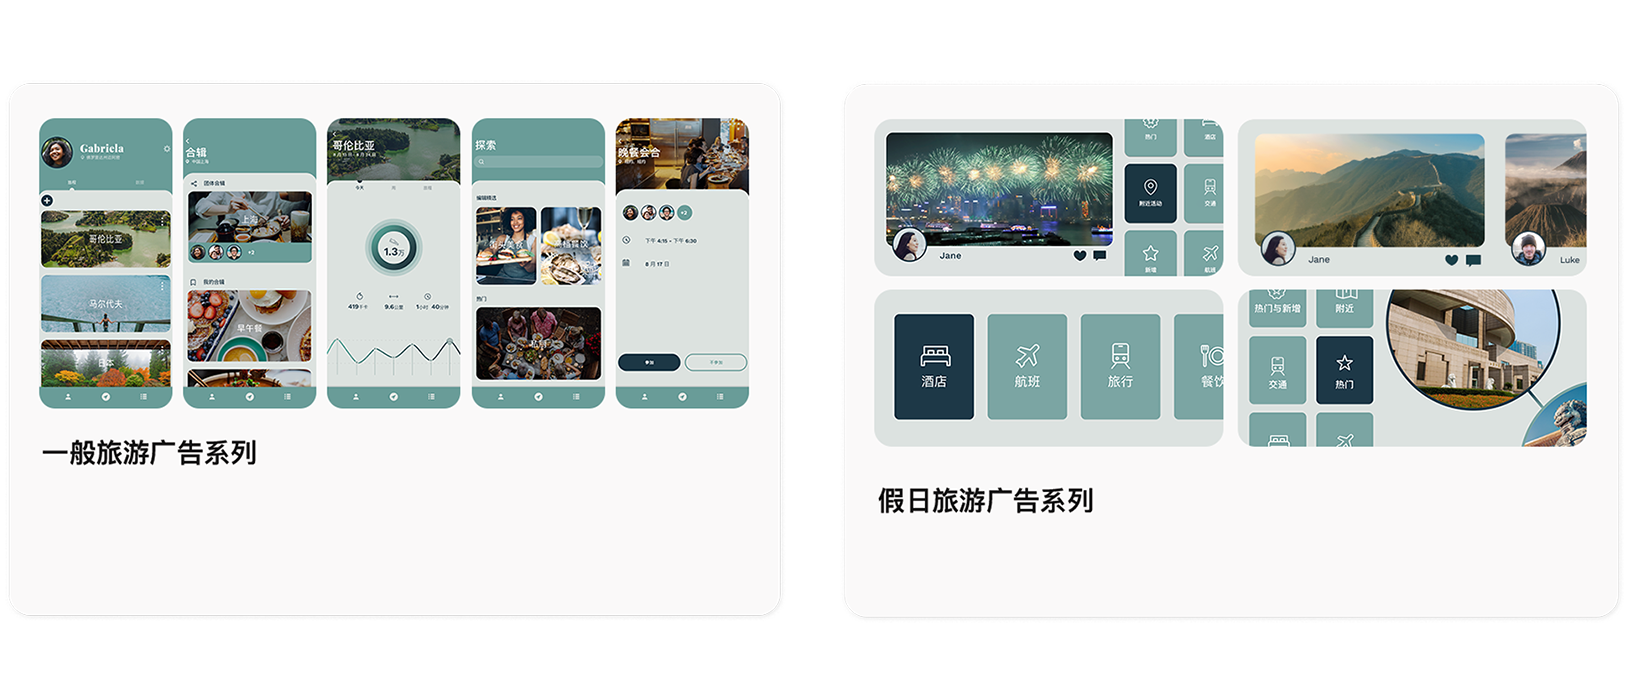 示例 app TripTrek 的两个 Today 标签页广告例子。左侧是常规旅游广告系列，包含 app 概览的图像。右边是可能会在一年中的推广时期投放的假日旅游广告系列。